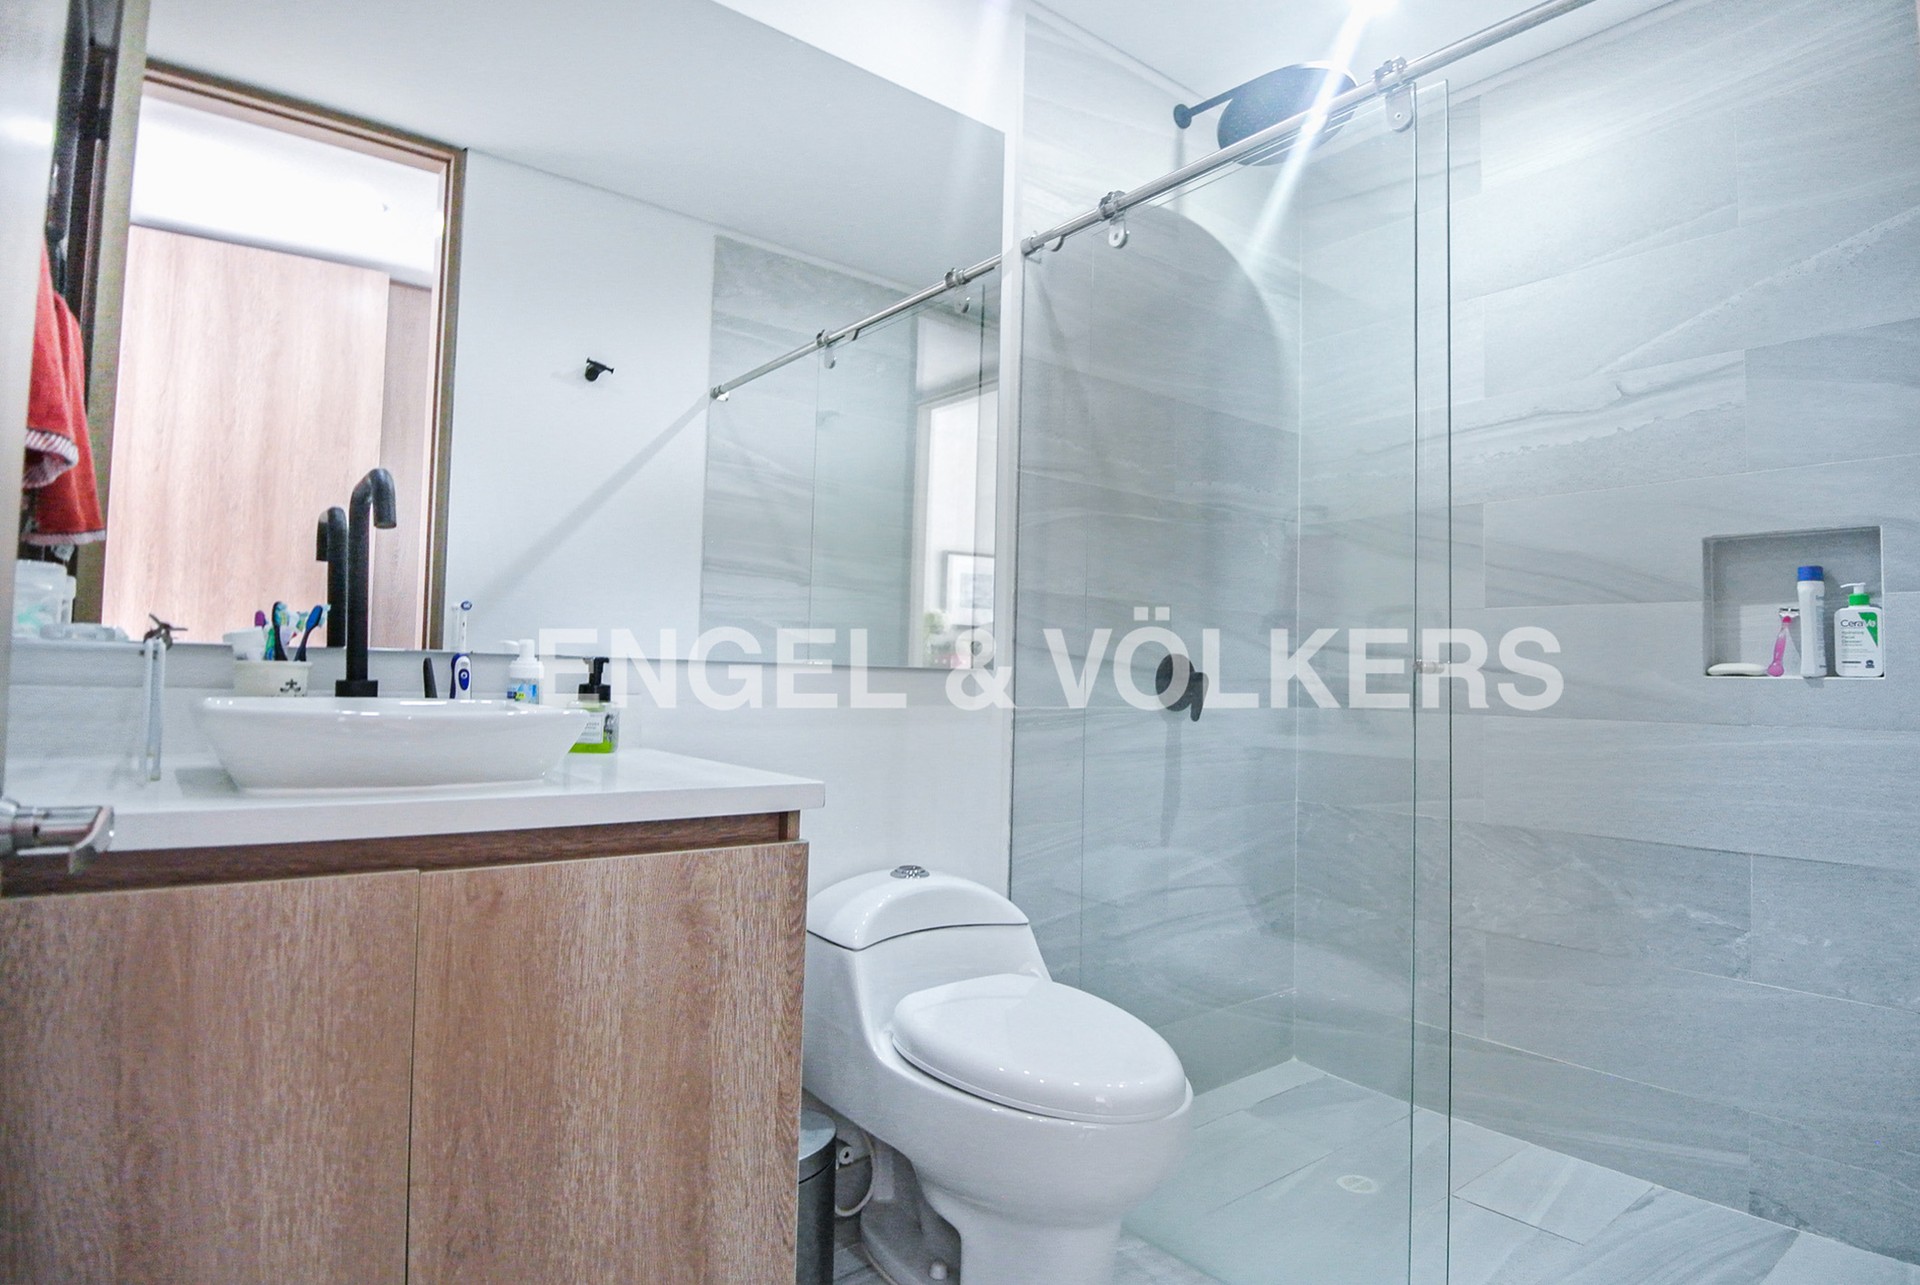 Inversión / Residencial inversión en Bella Suiza - Lisboa - 12 - Baño de habitación penthouse